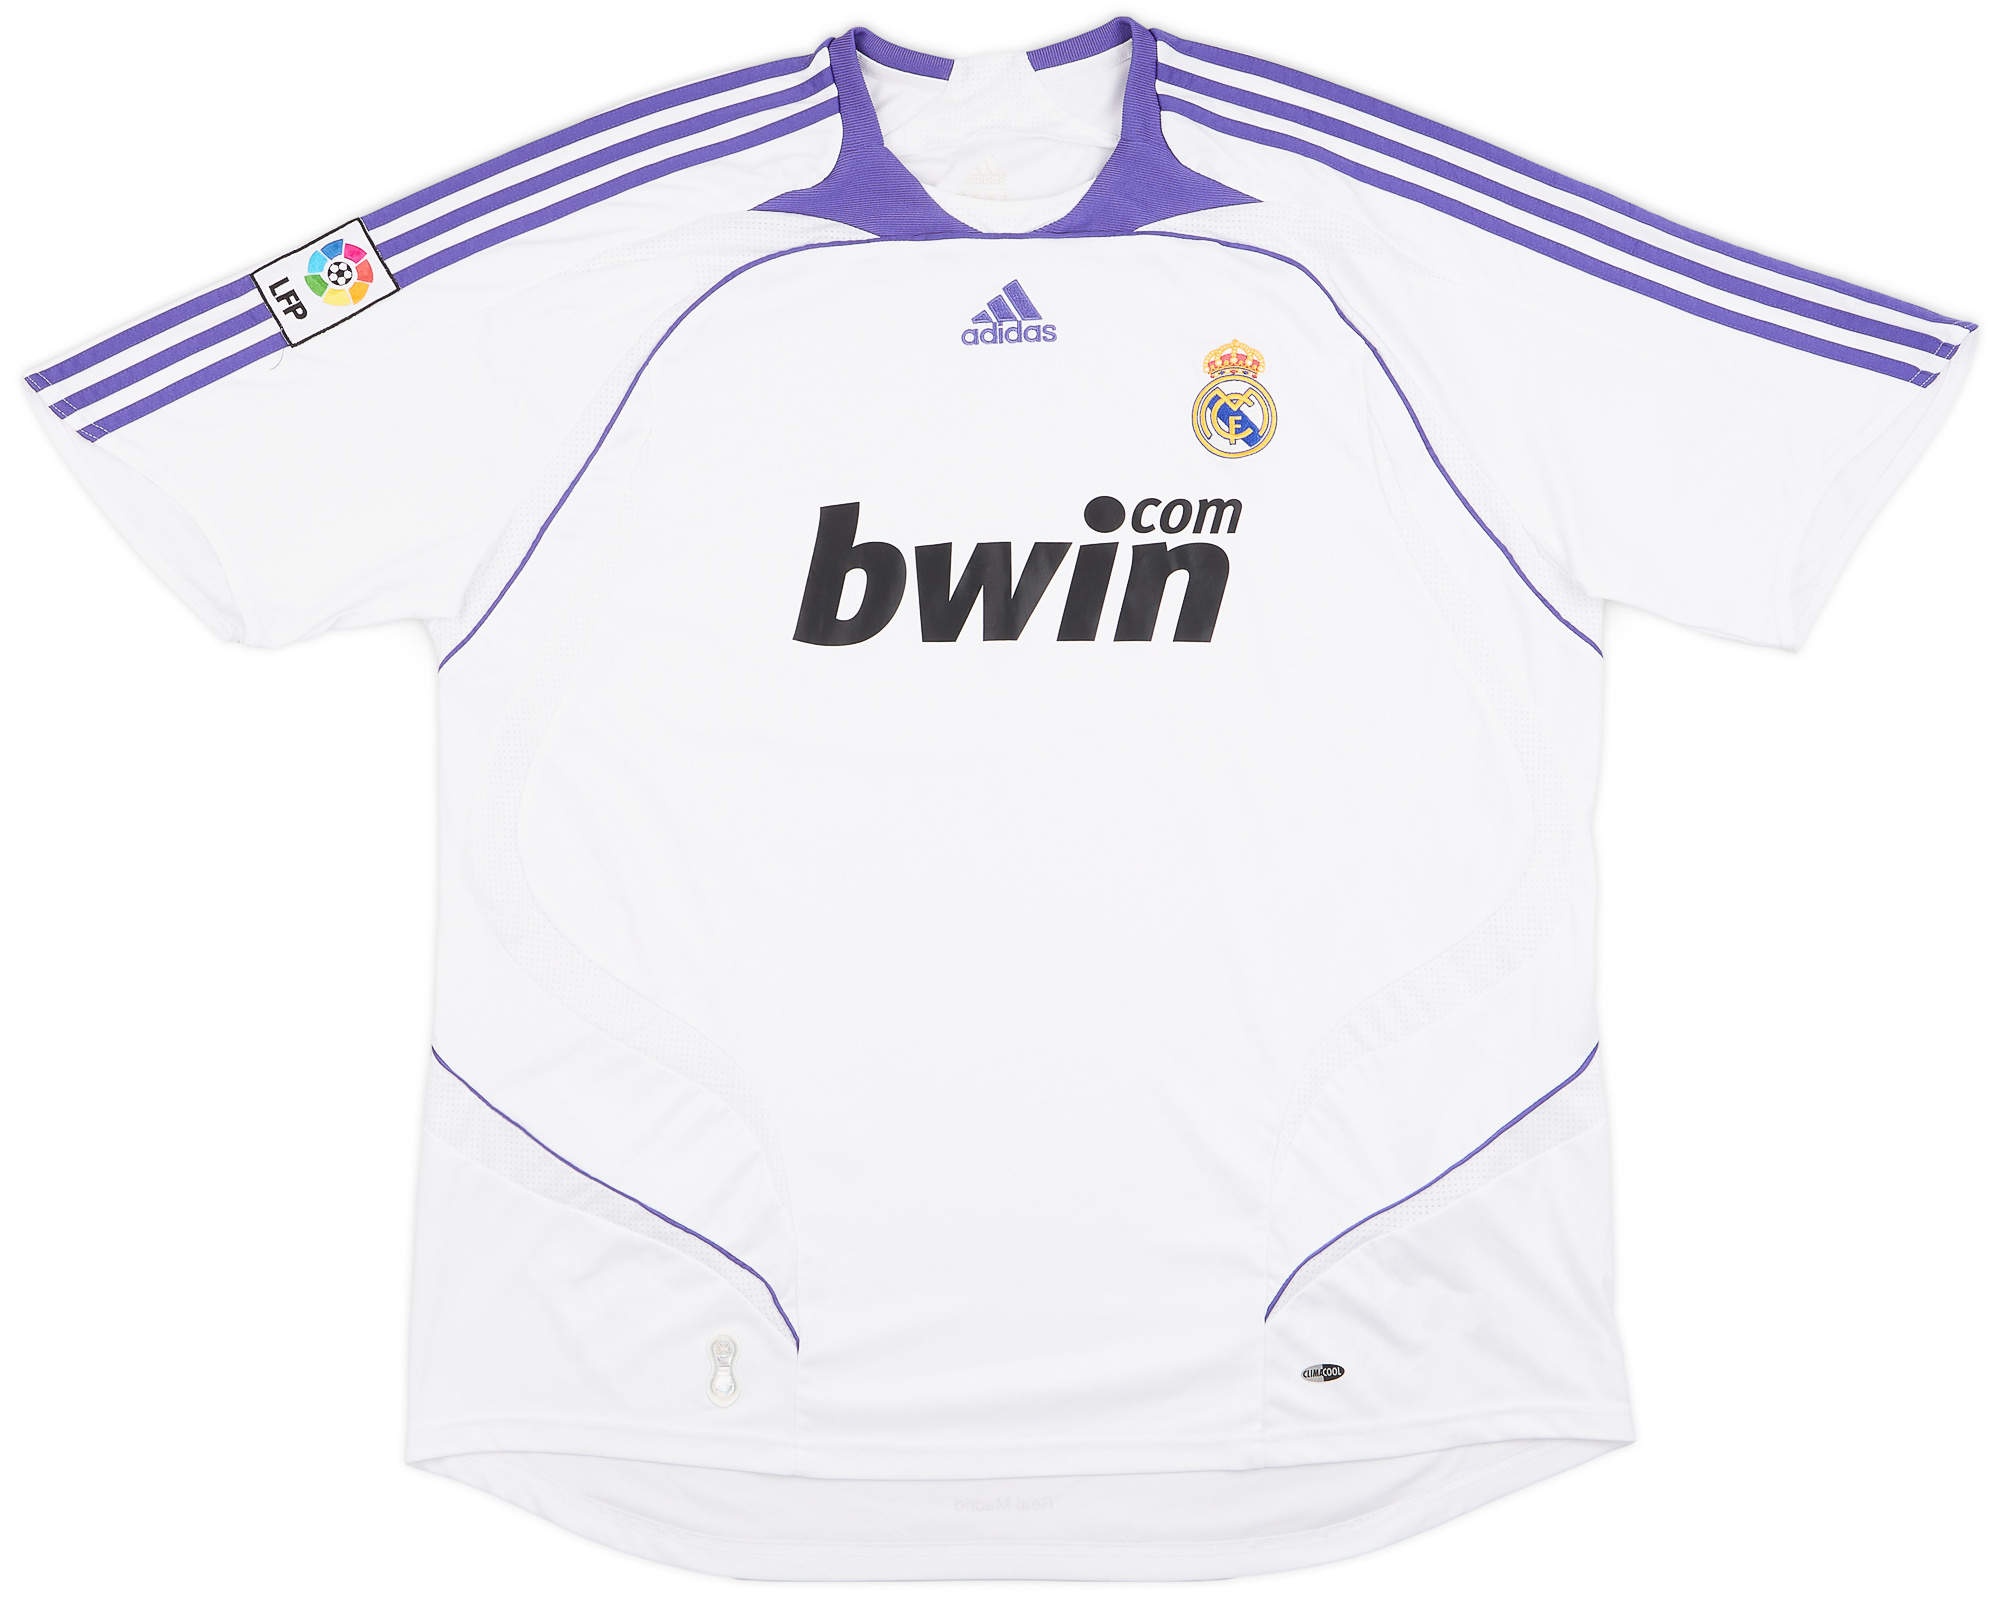 Retro Real Madrid Shirt